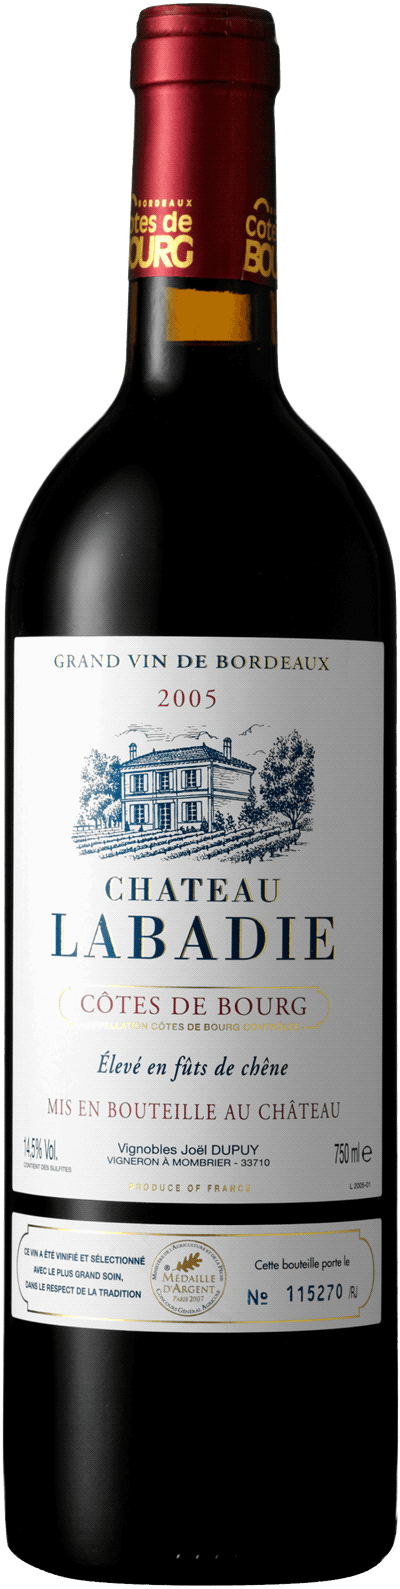 Château Labadie 